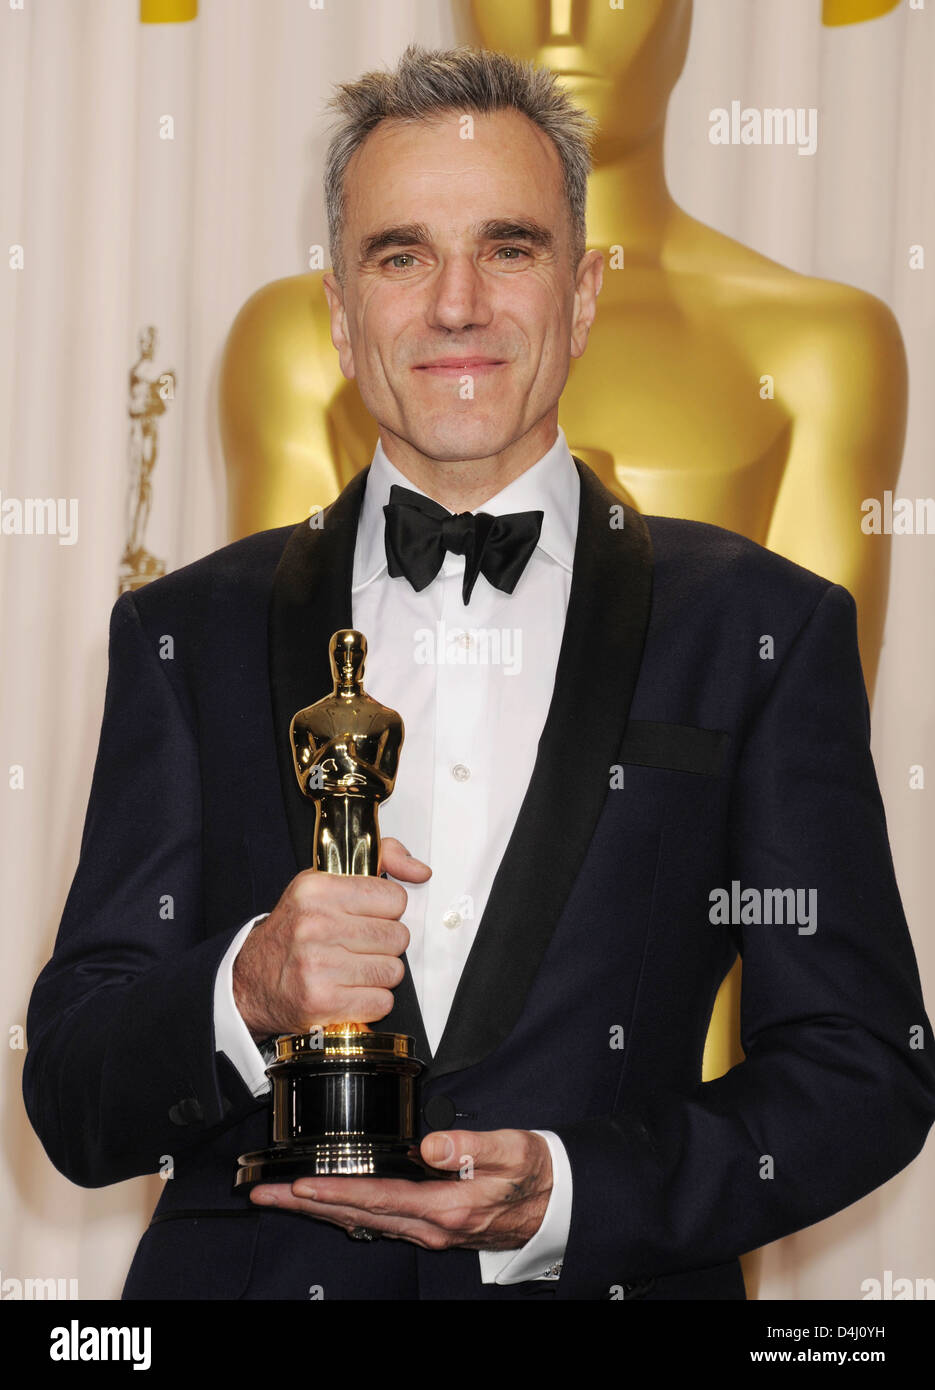 DANIEL DAY-LEWIS film anglo-irlandese attore con il suo Oscar per Lincoln aggiudicati all'ottantacinquesimo Academy Awards a Los Angeles 2013 Foto Stock